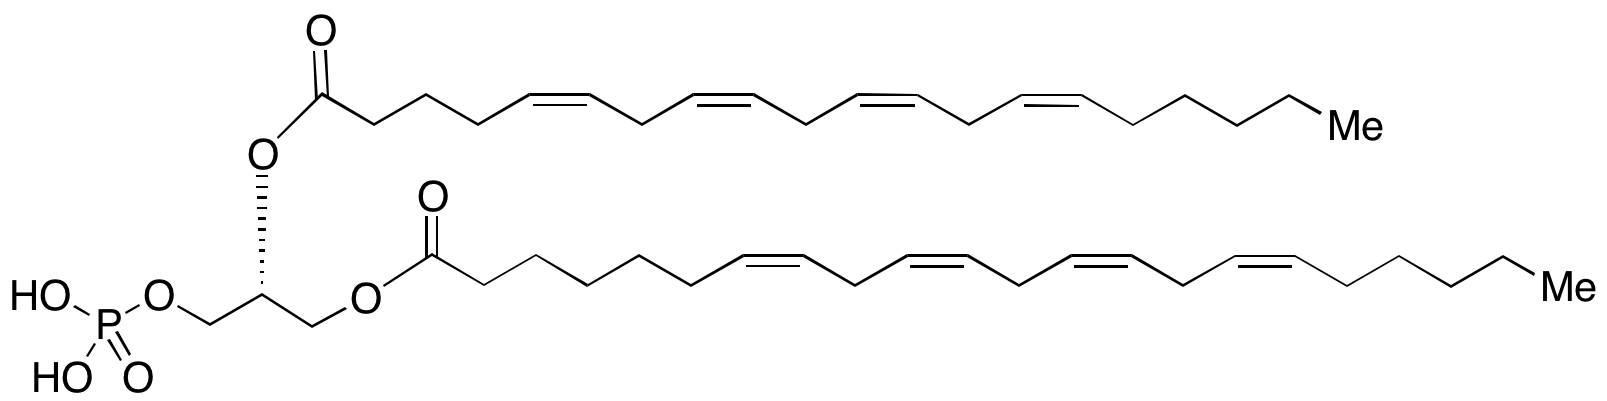 1-(7Z,10Z,13Z,16Z-Docosatetraenoyl)-2-(5Z,8Z,11Z,14Z-eicosatetraenoyl)-glycero-3-phosphate